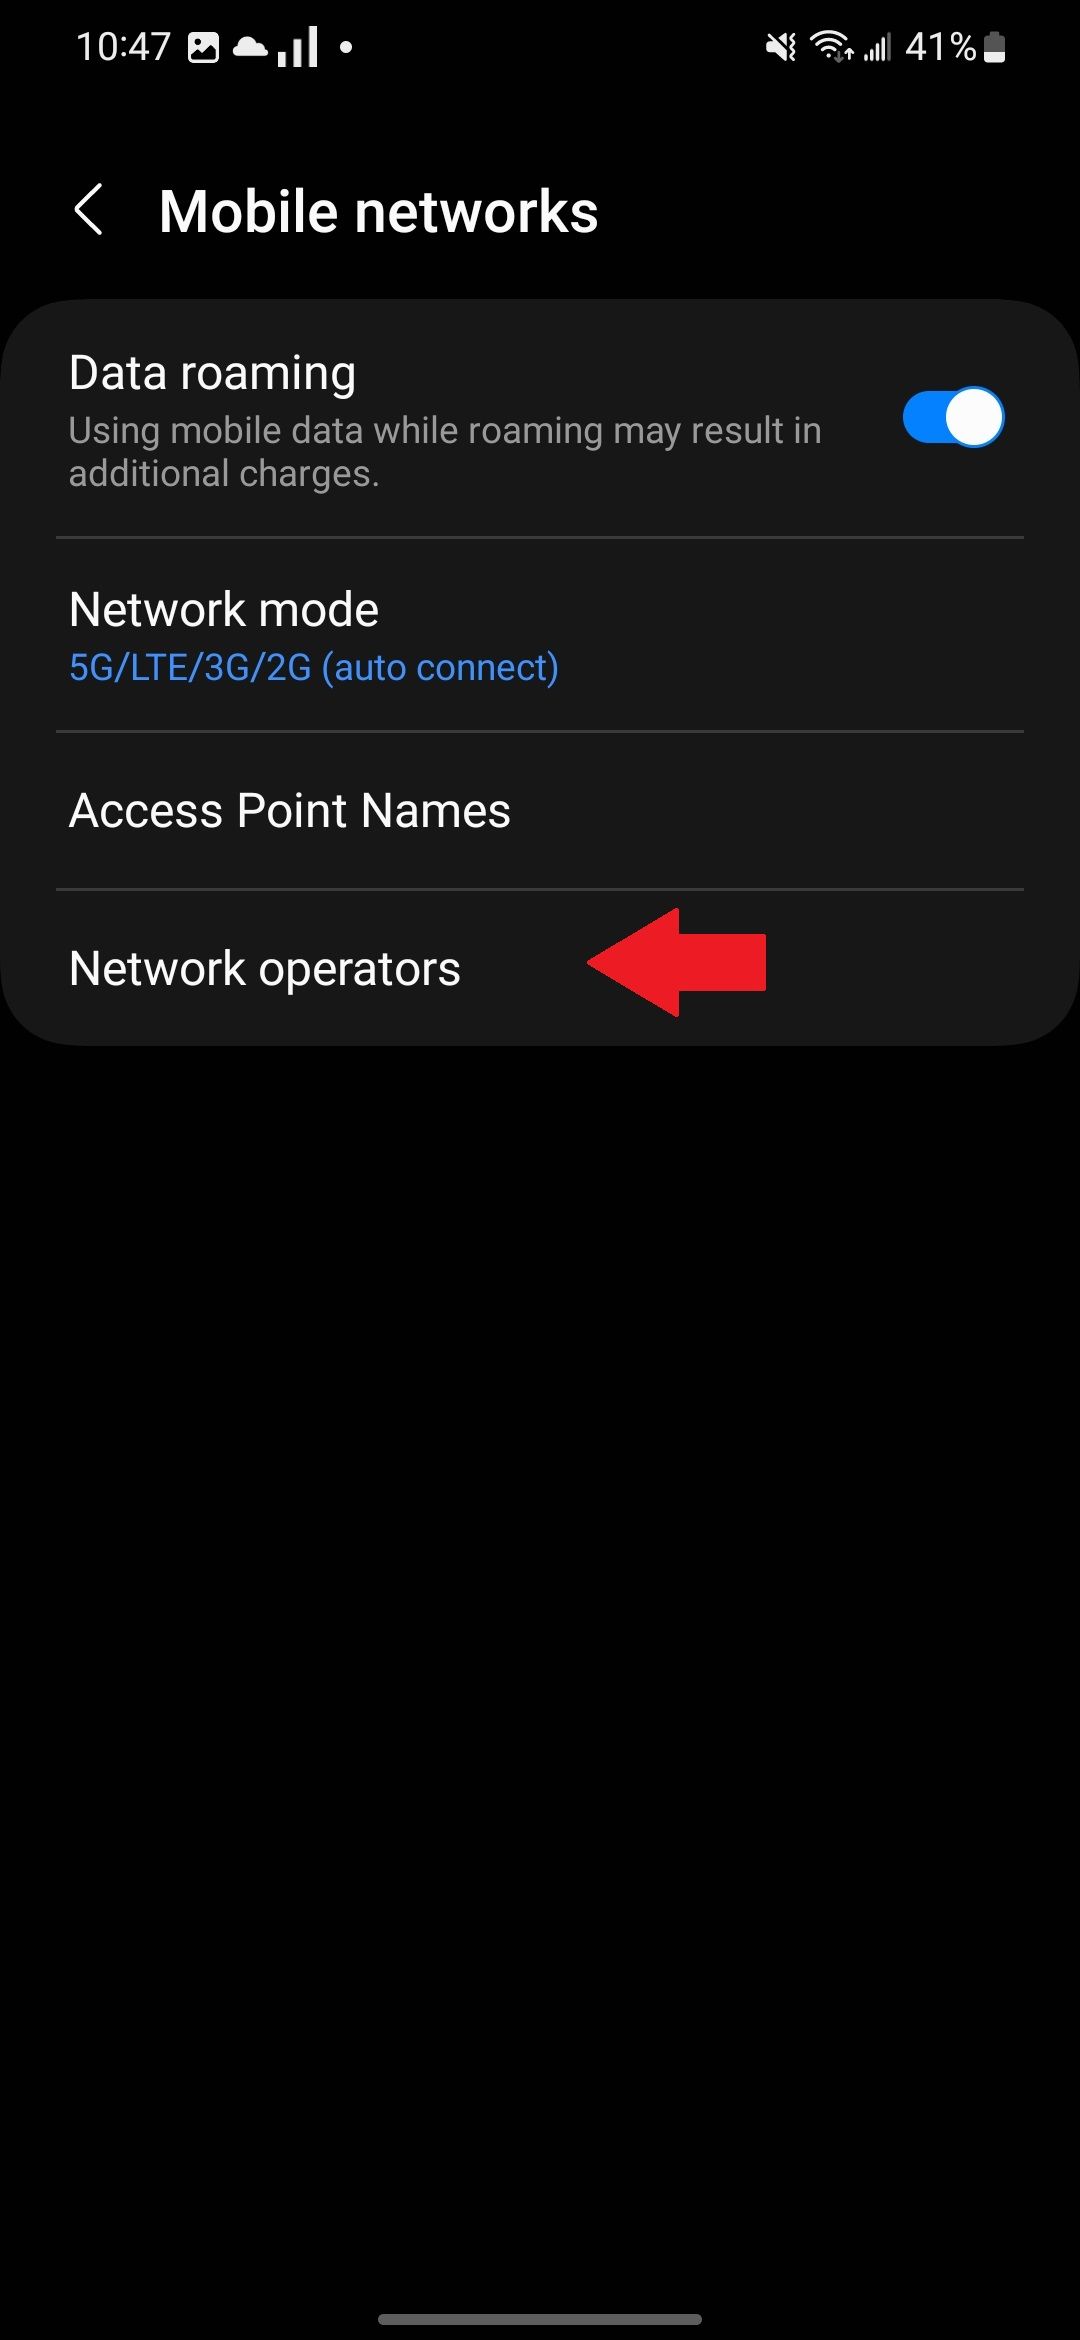 Configurações de redes móveis em um telefone Samsung com uma seta vermelha apontando para a opção Operadoras de rede